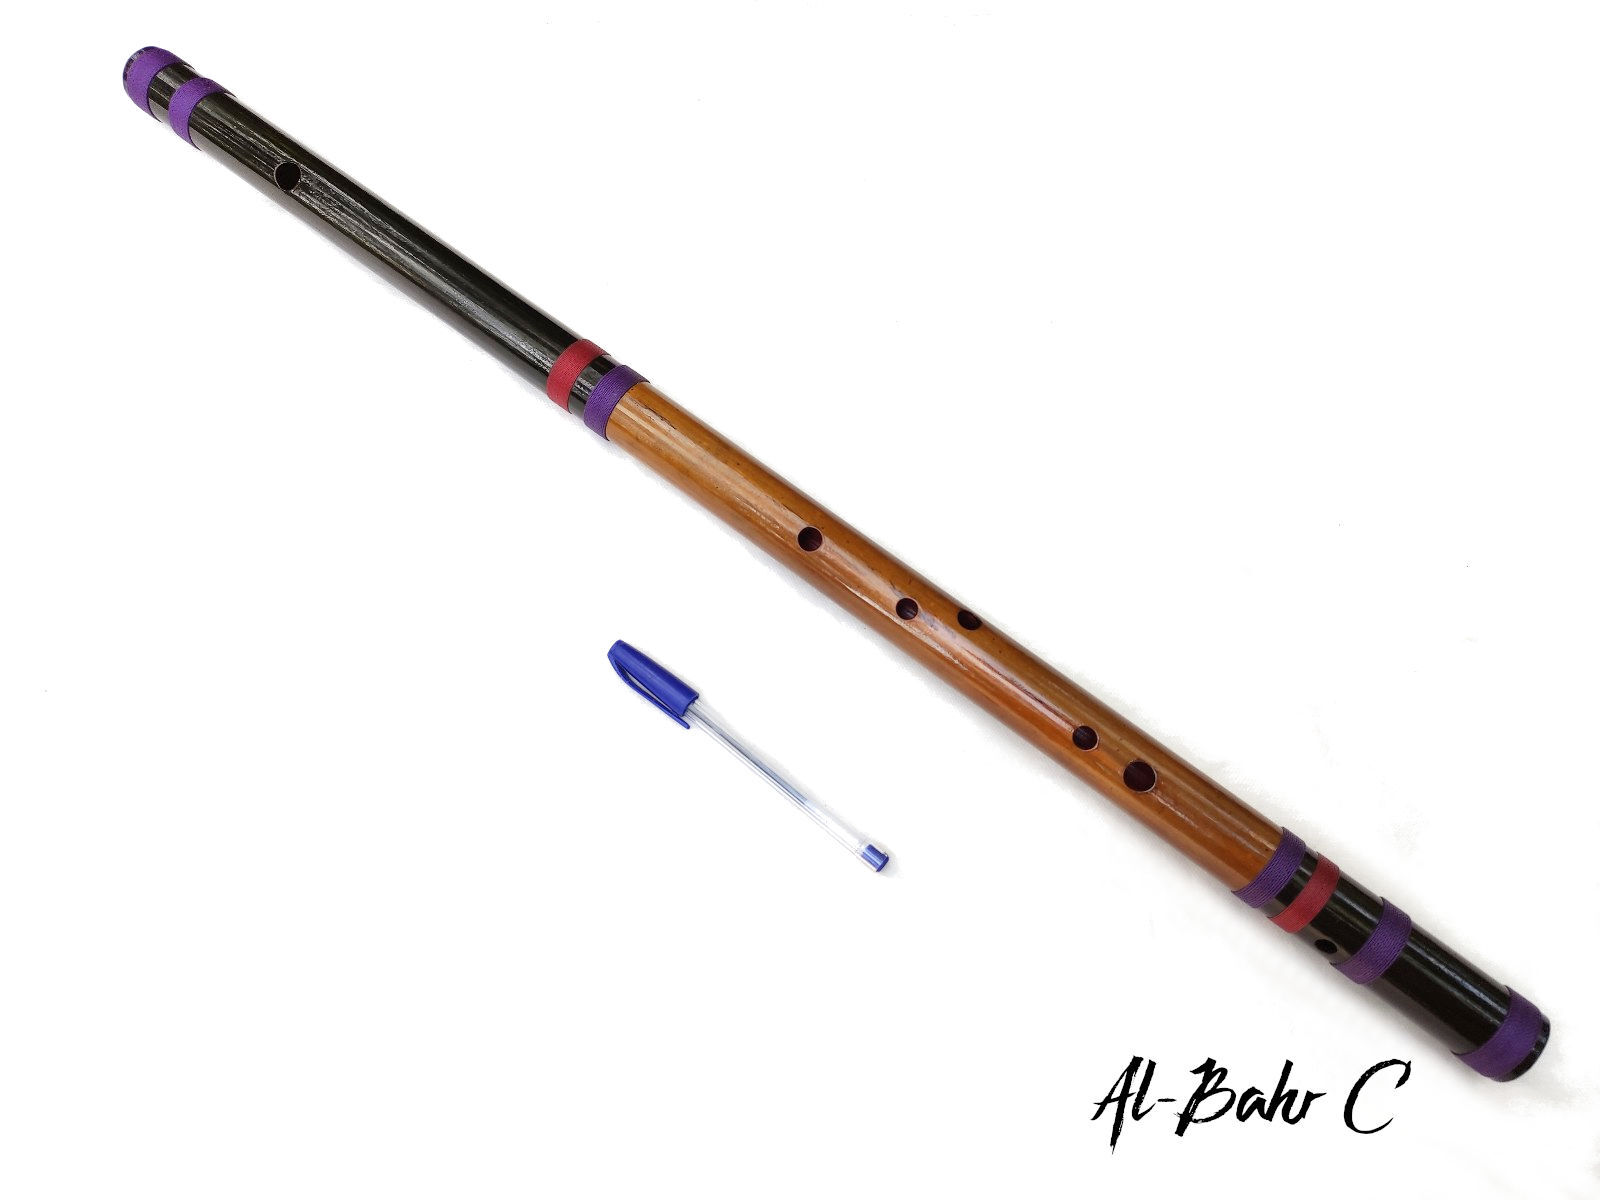 Flauta Al-bahr C Black - Hijaz